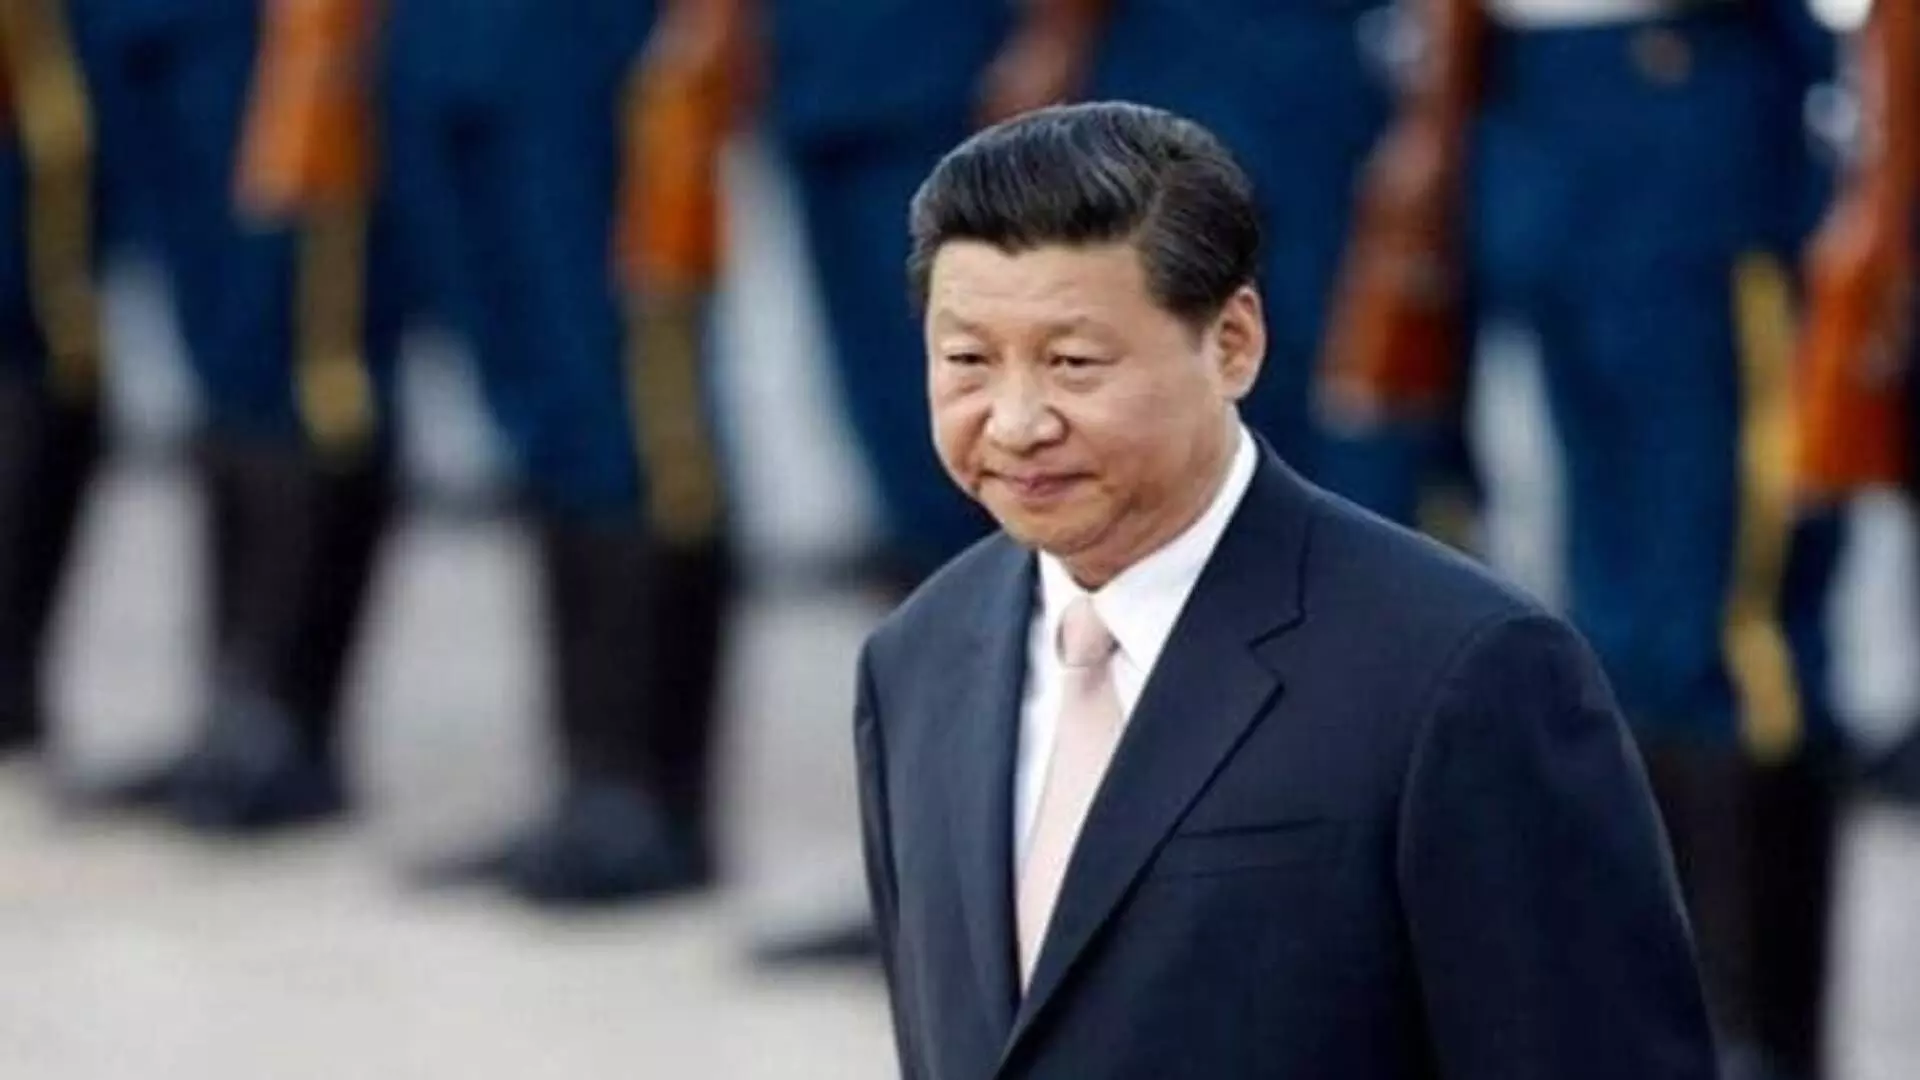 #chinacoup : चीनमध्ये खळबळ, राष्ट्राध्यक्ष शी जिनपिंग नजरकेदैत?